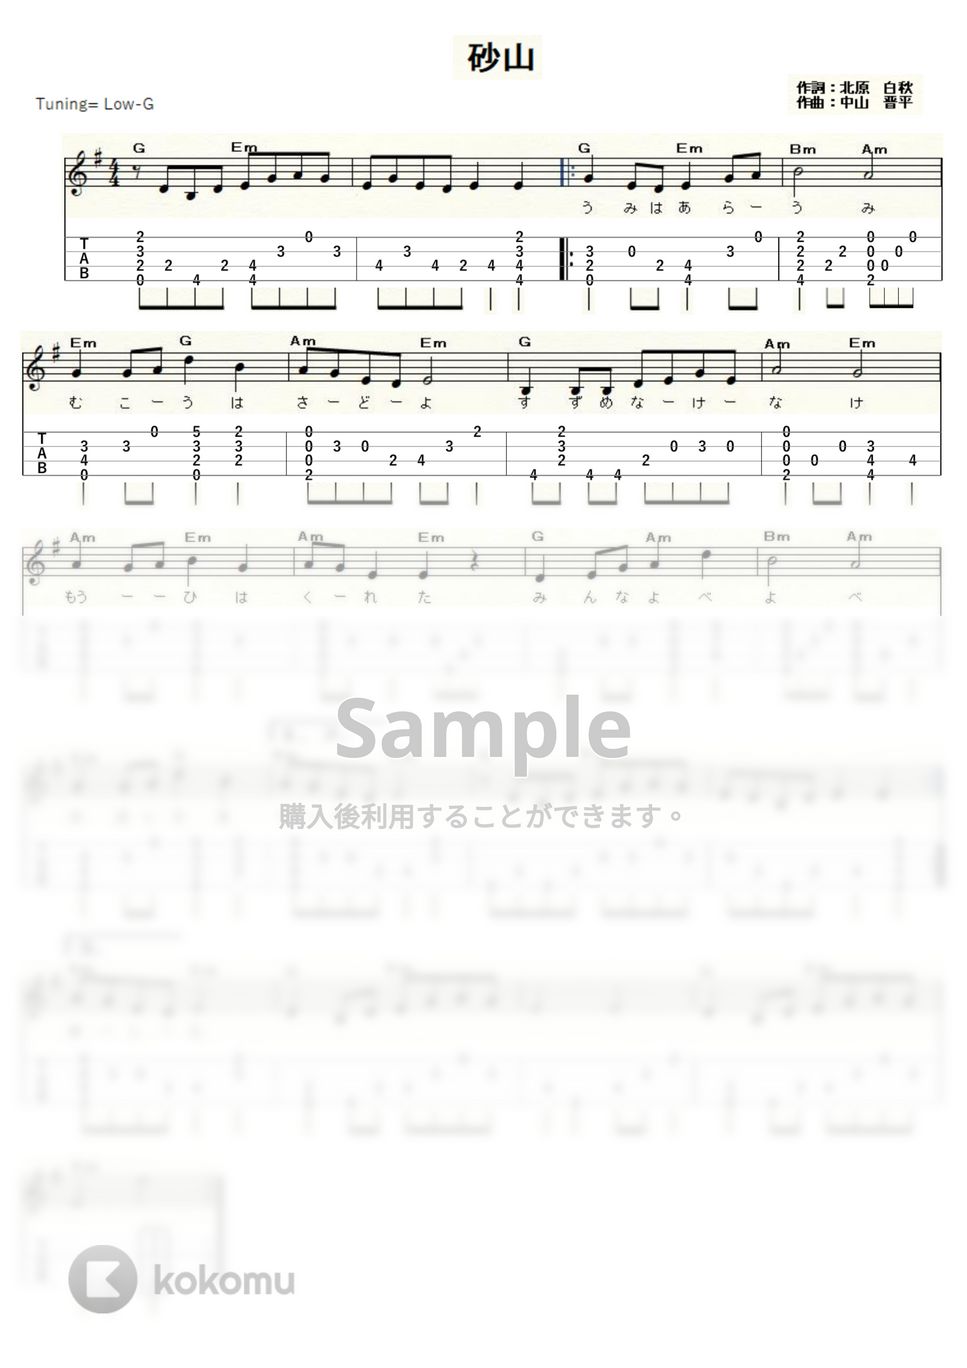 砂山（中山晋平・山田耕筰） (ｳｸﾚﾚｿﾛ / High-G・Low-G / 中級) by ukulelepapa